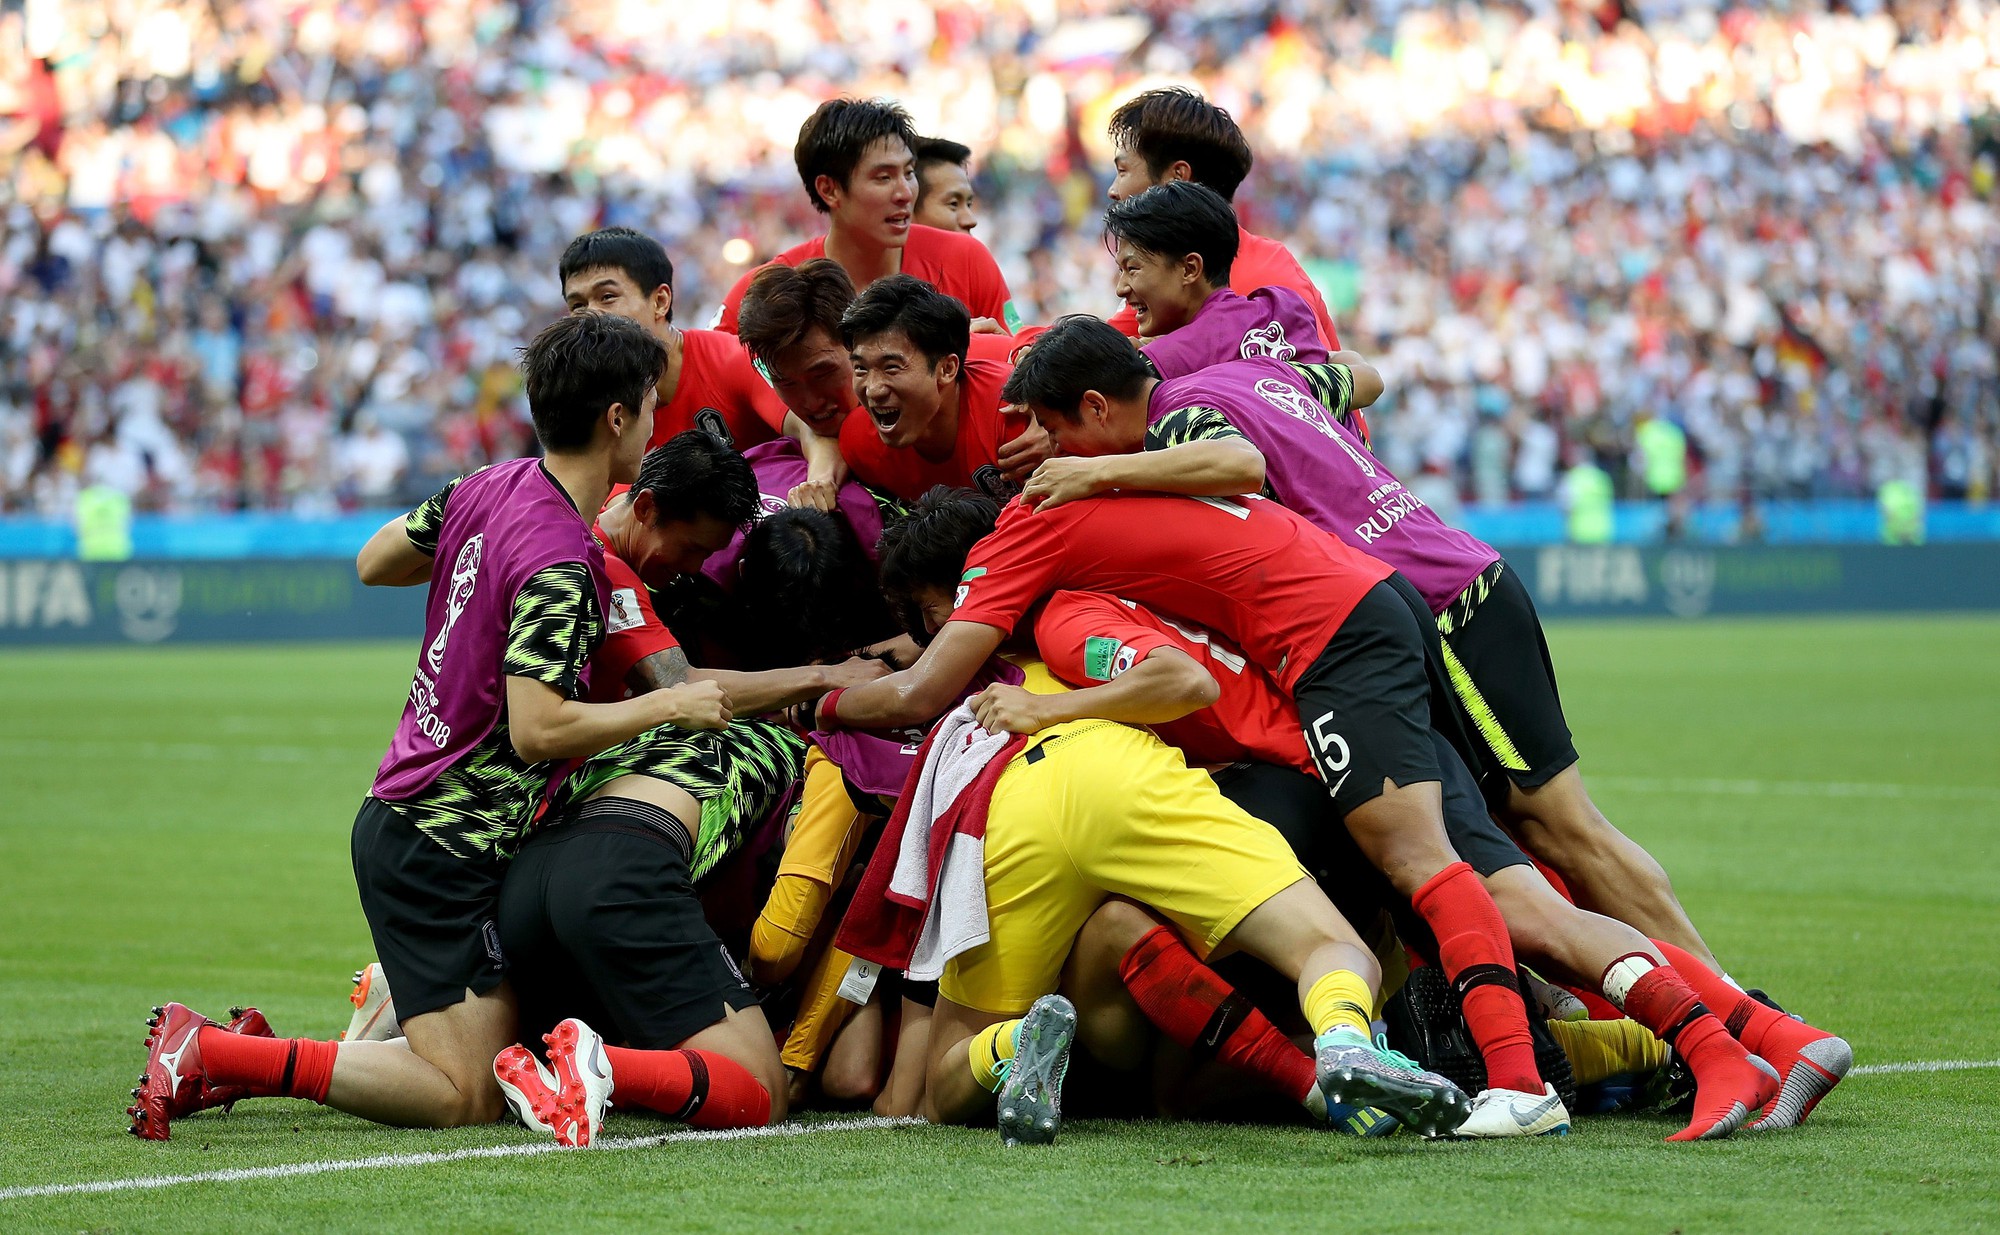 Cầu thủ Hàn Quốc bật khóc, vỡ òa sau chiến tích loại nhà vô địch Đức - Ảnh 4.